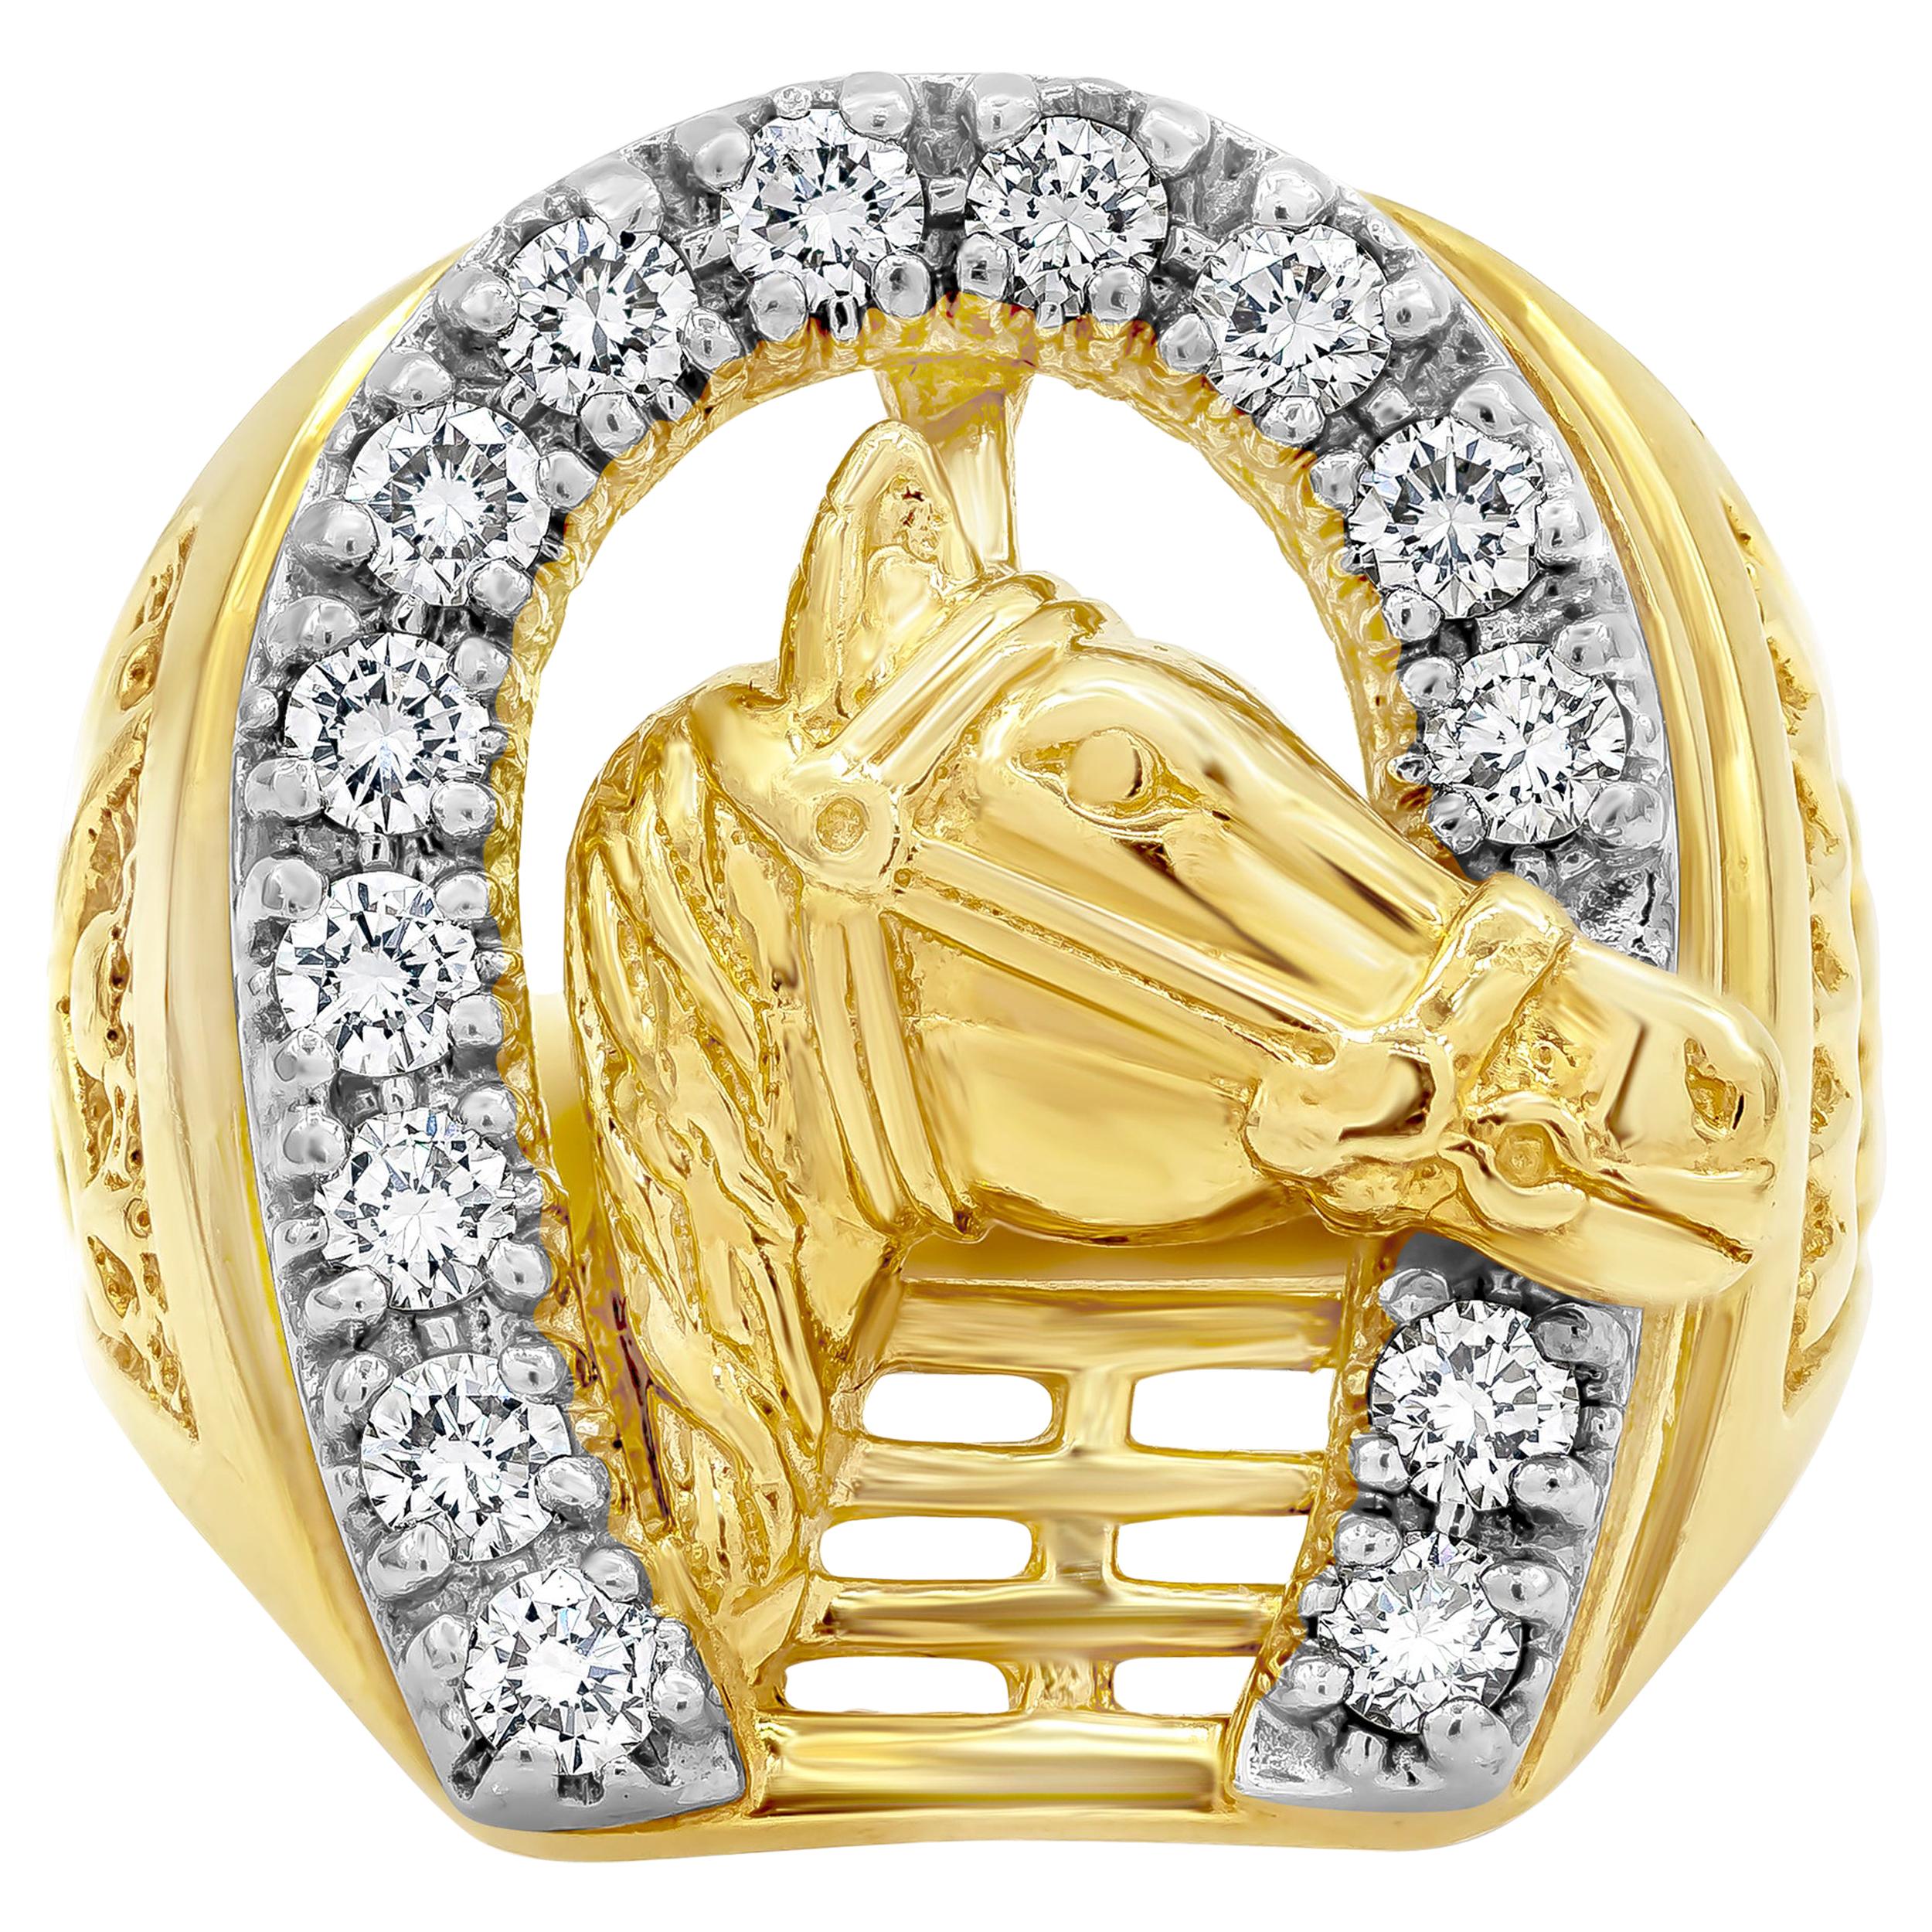 The Golden Eye: Wild Horse Ring